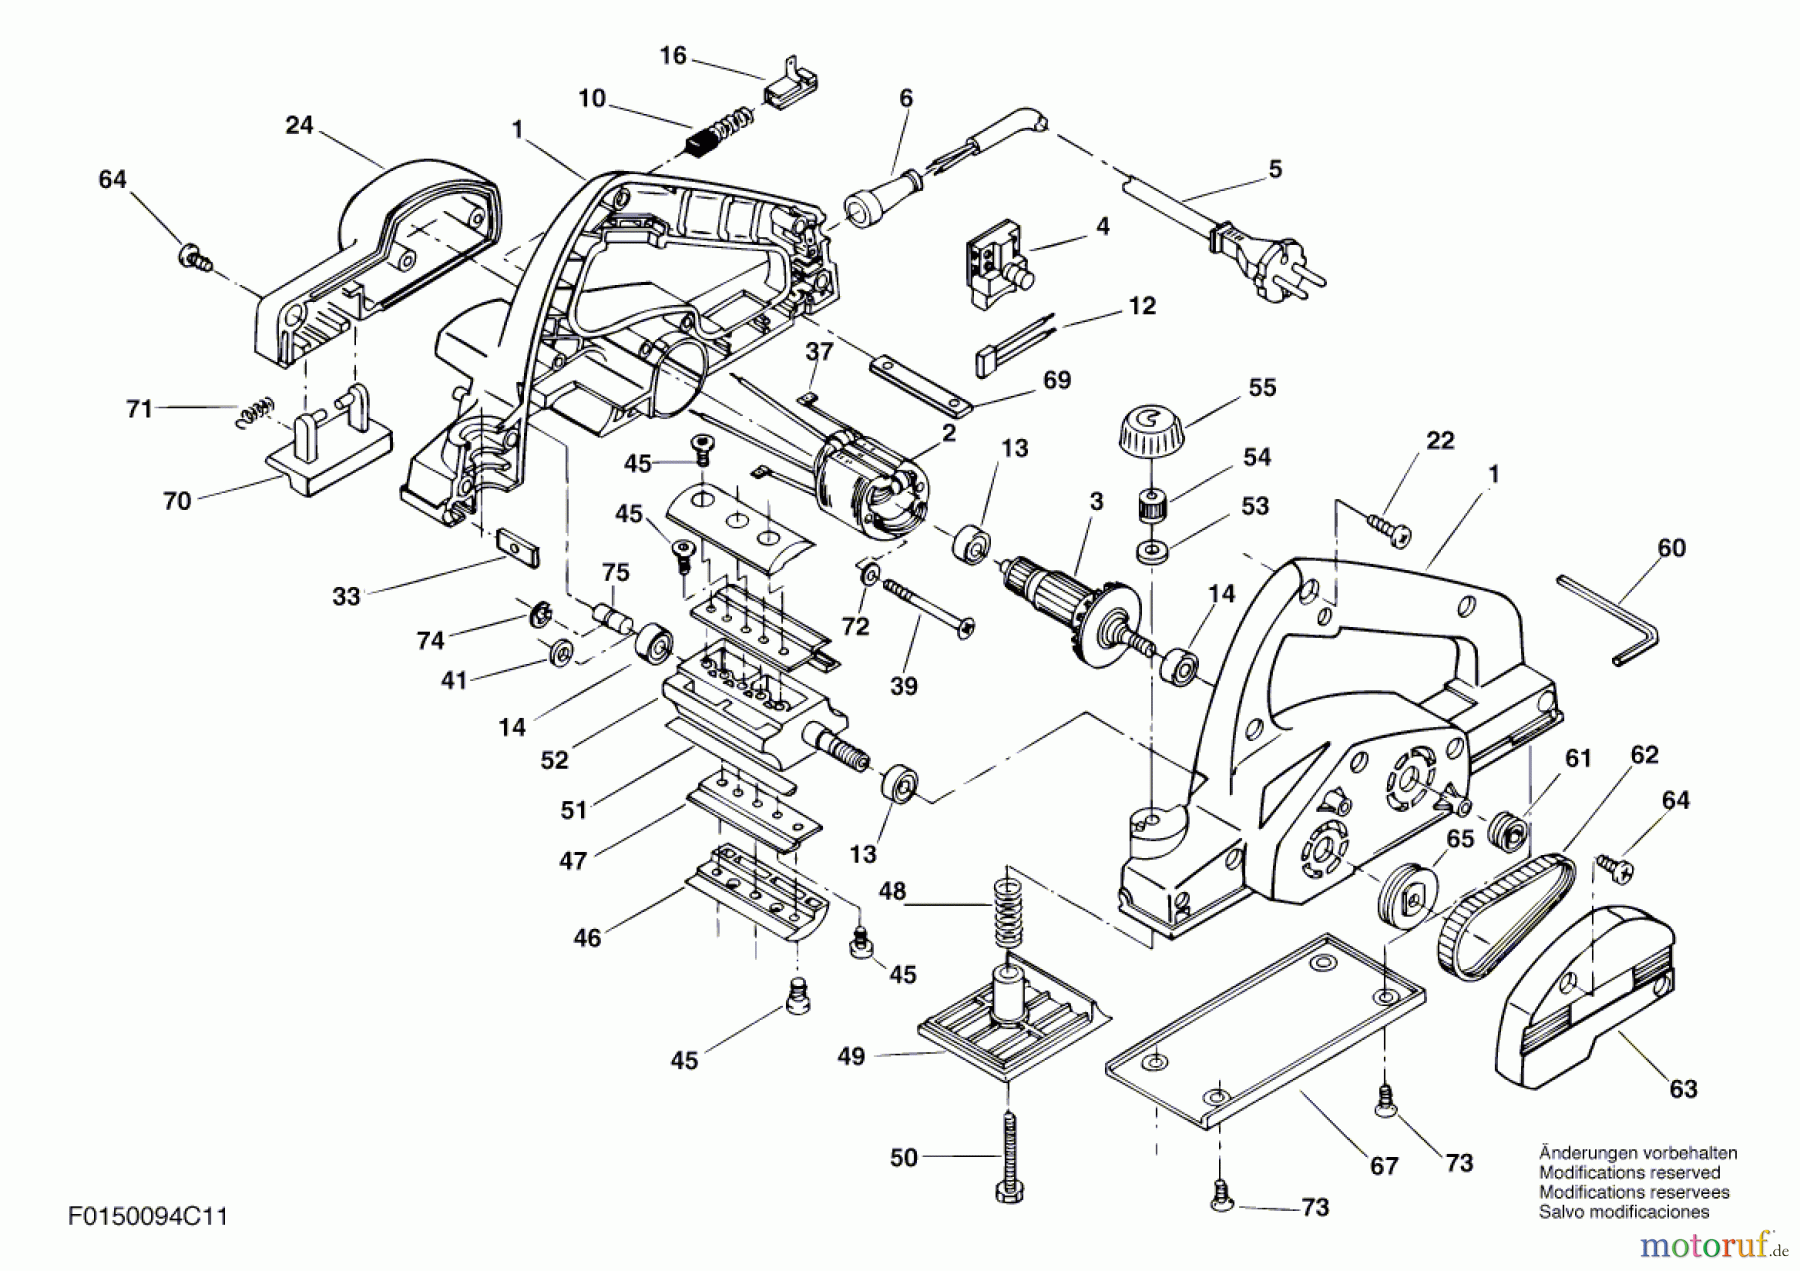  Bosch Werkzeug Handhobel 94H1 Seite 1